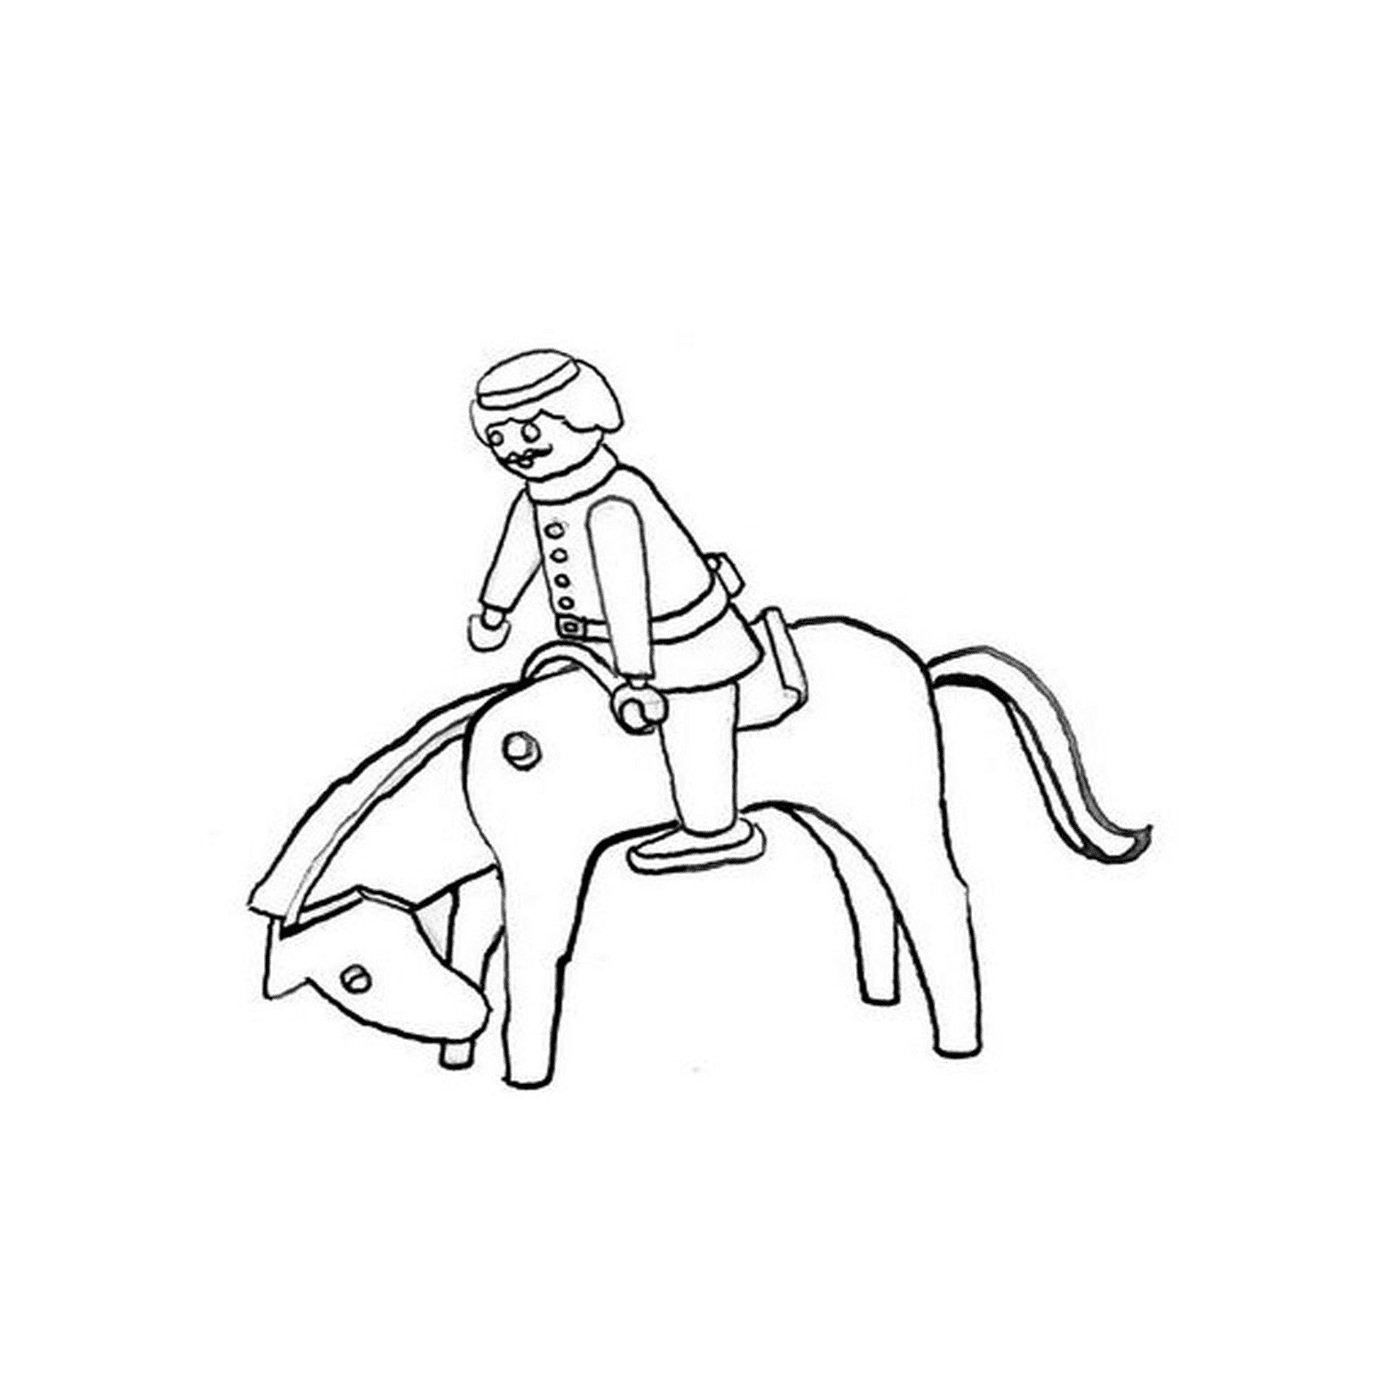  Man riding a horse 